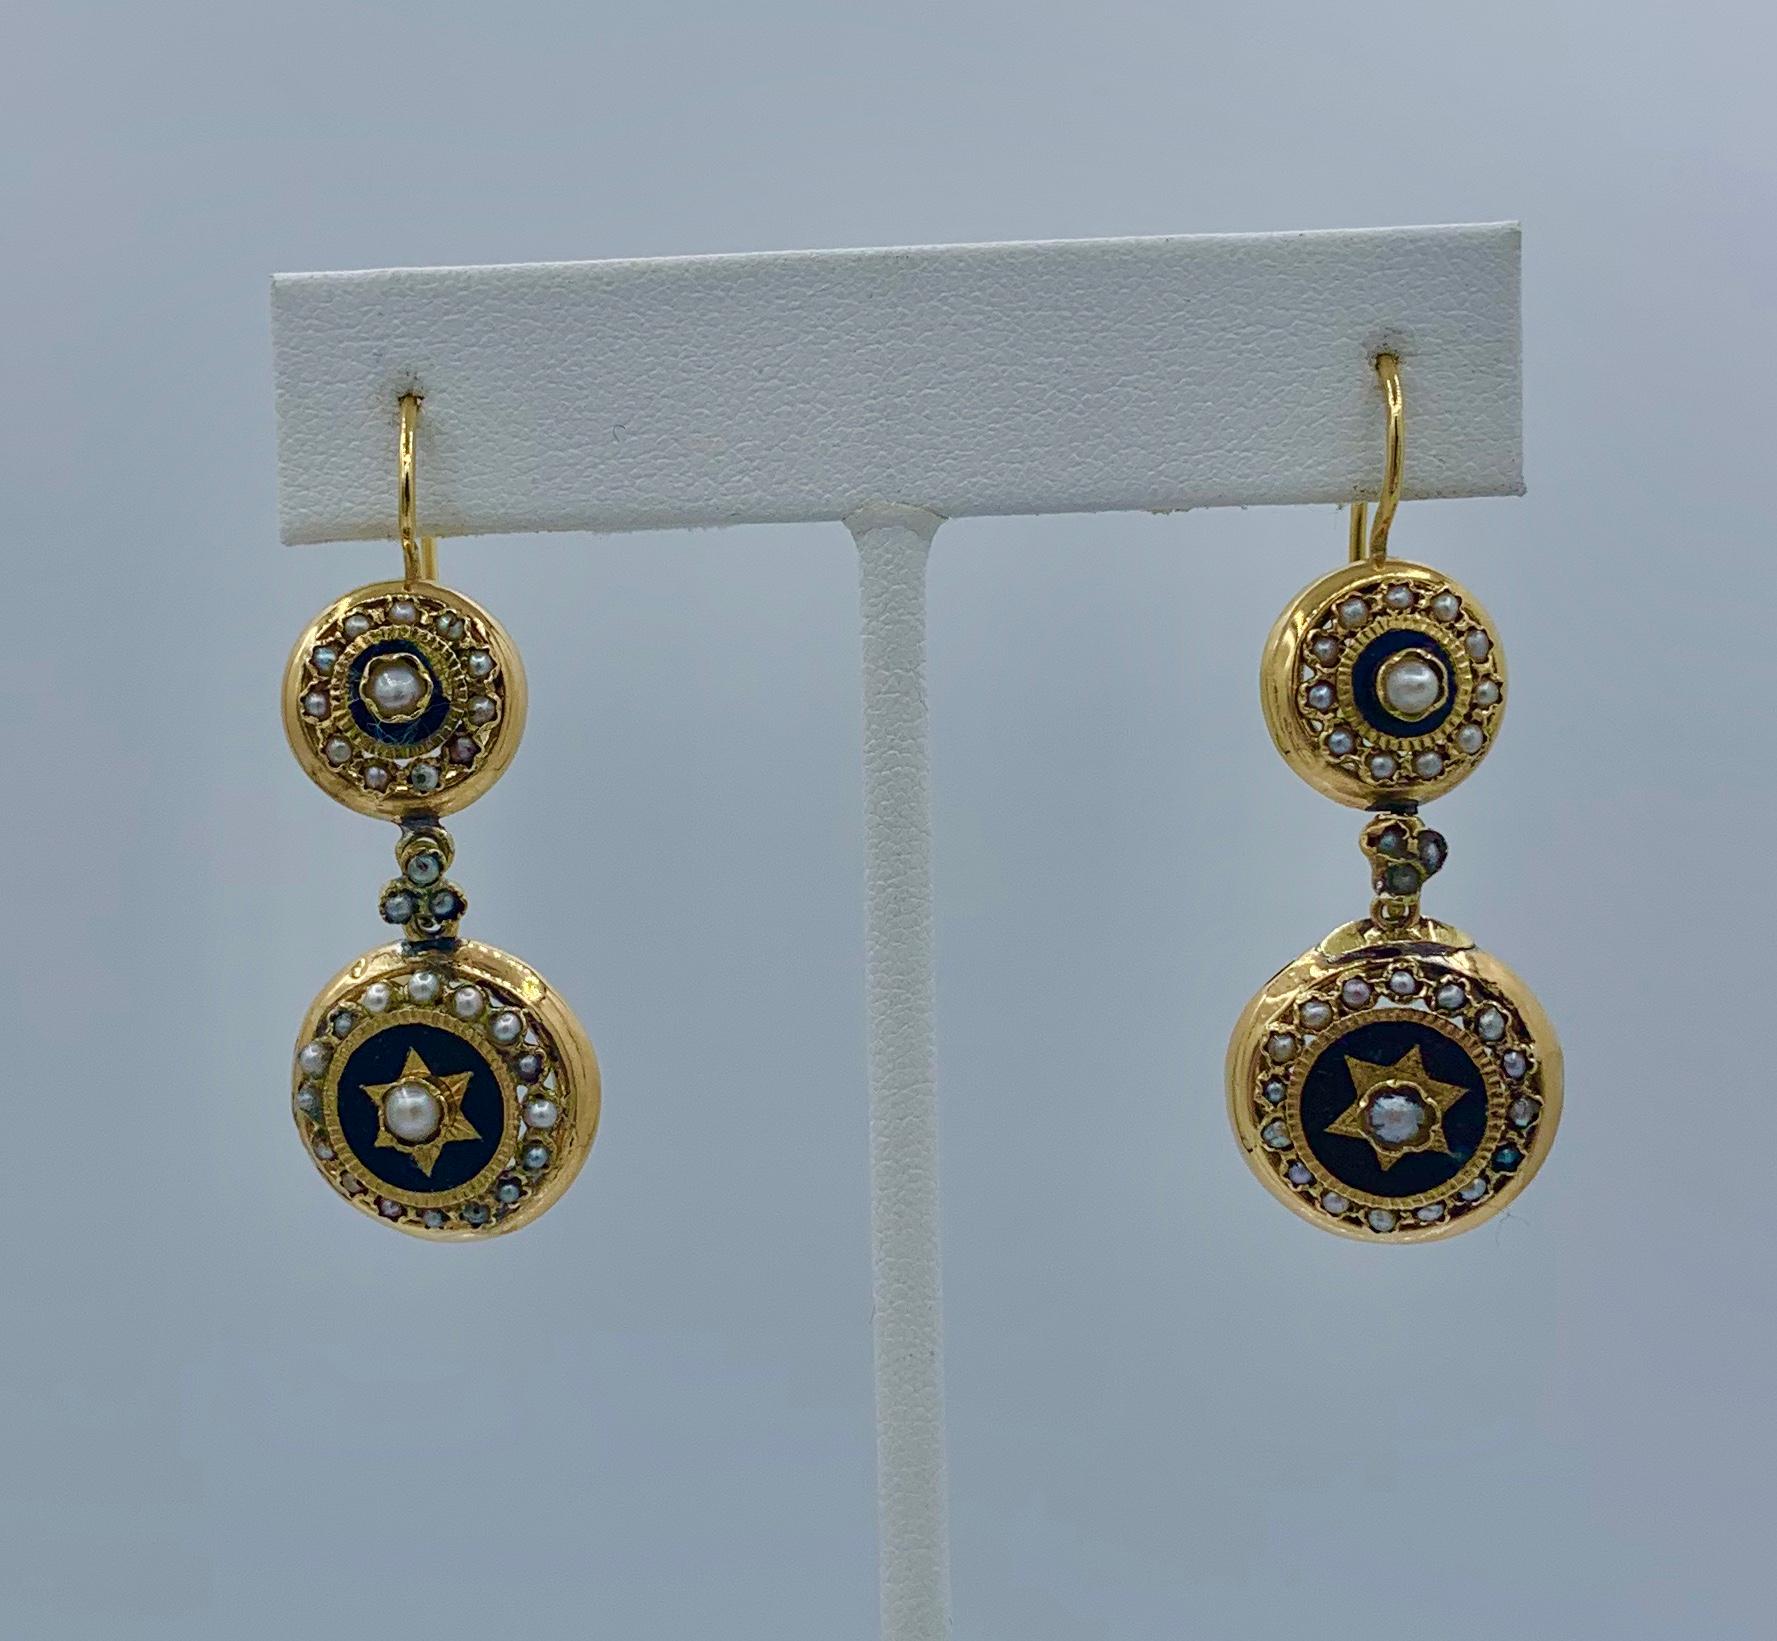 Il s'agit d'une paire très rare de pendants d'oreilles en or 18 carats de style ancien français géorgien et victorien avec un superbe motif d'étoile en émail et perles et une longueur spectaculaire de 1 7/8 pouces.   Ces boucles d'oreilles anciennes